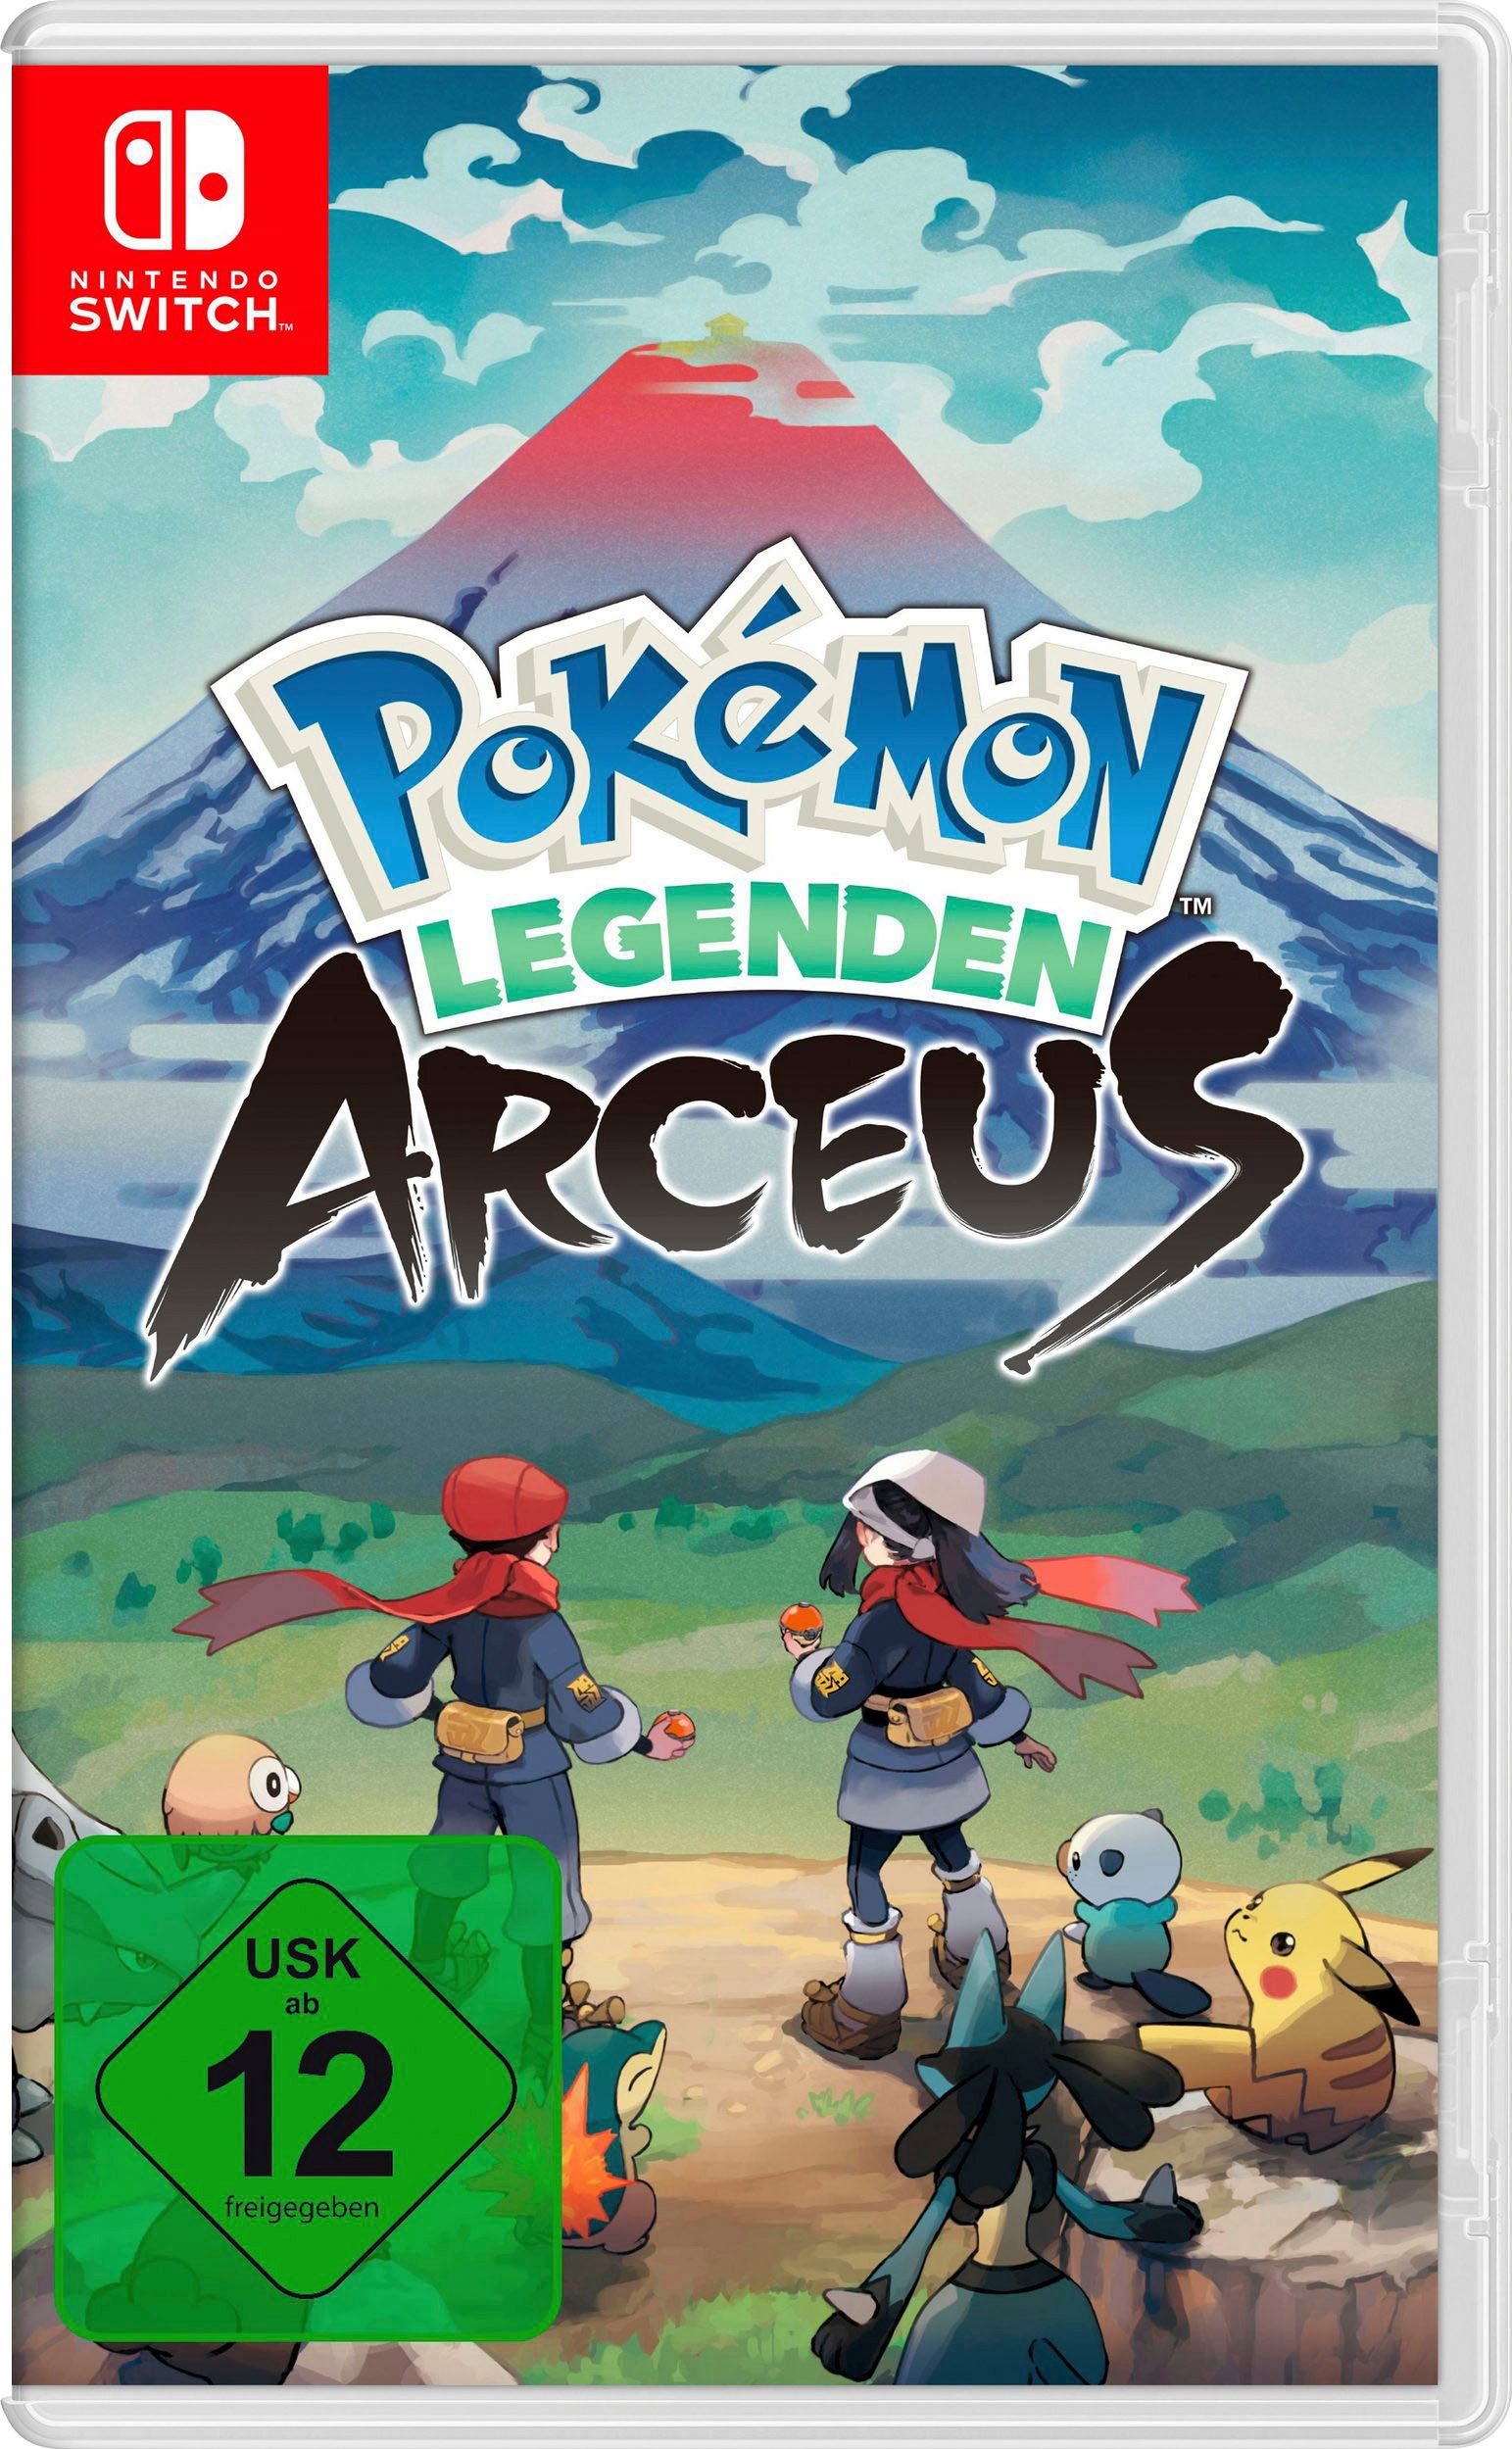 OLED-Modell, inkl. Nintendo Arceus Switch, Pokémon Legenden